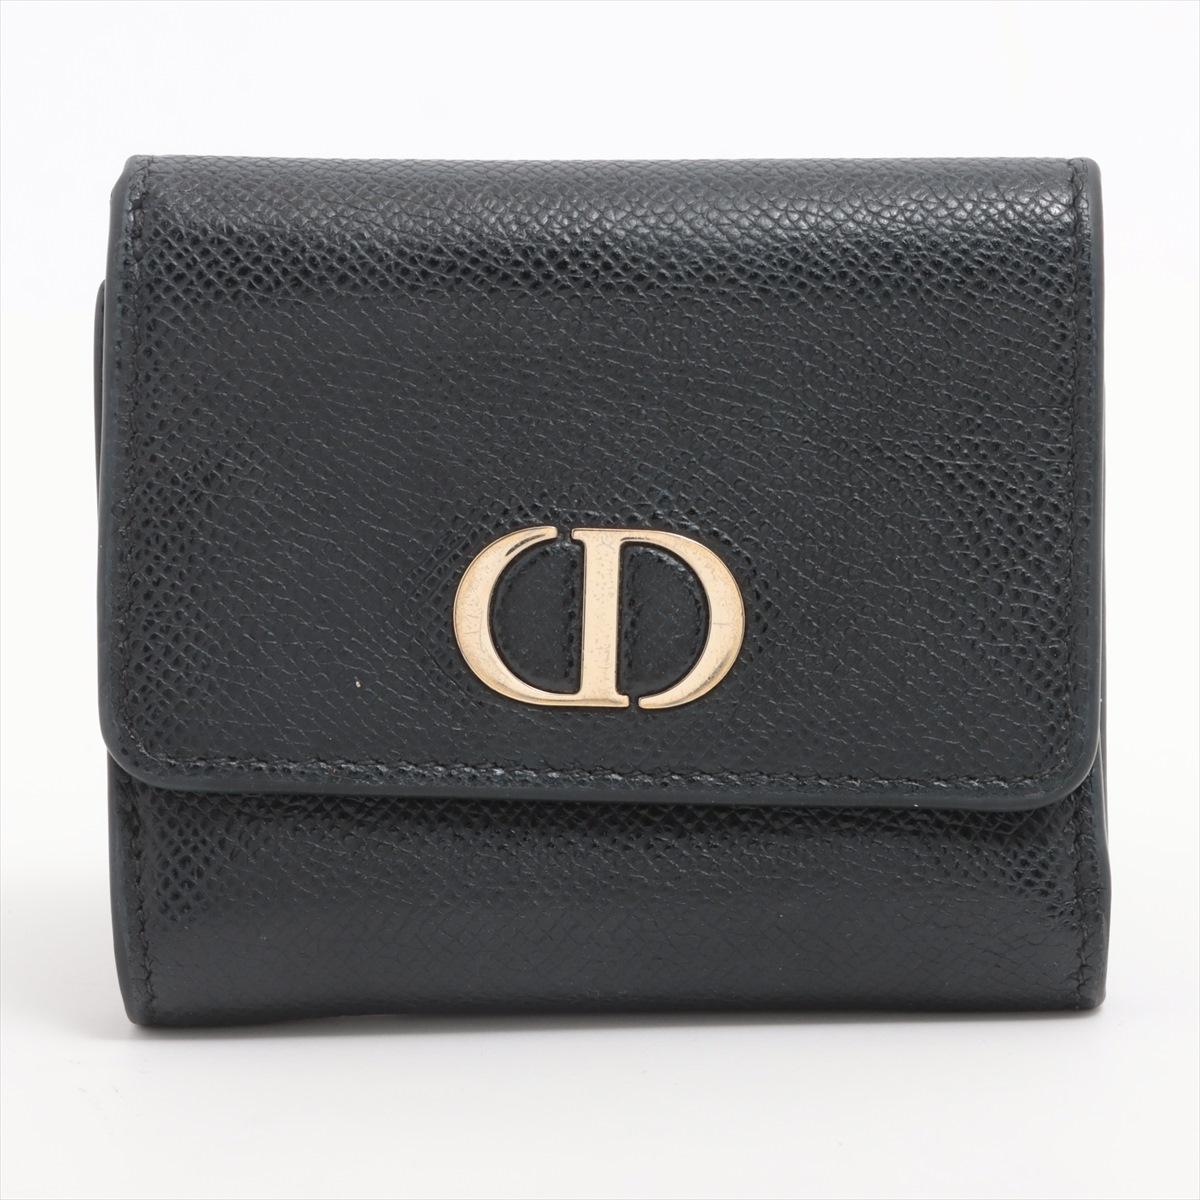 Die Dior Montaigne Trifold Geldbörse aus Leder in Schwarz ist ein elegantes und raffiniertes Accessoire, das das zeitlose Design von Dior widerspiegelt. Das Portemonnaie ist aus schwarzem Glattleder gefertigt und zeichnet sich durch eine